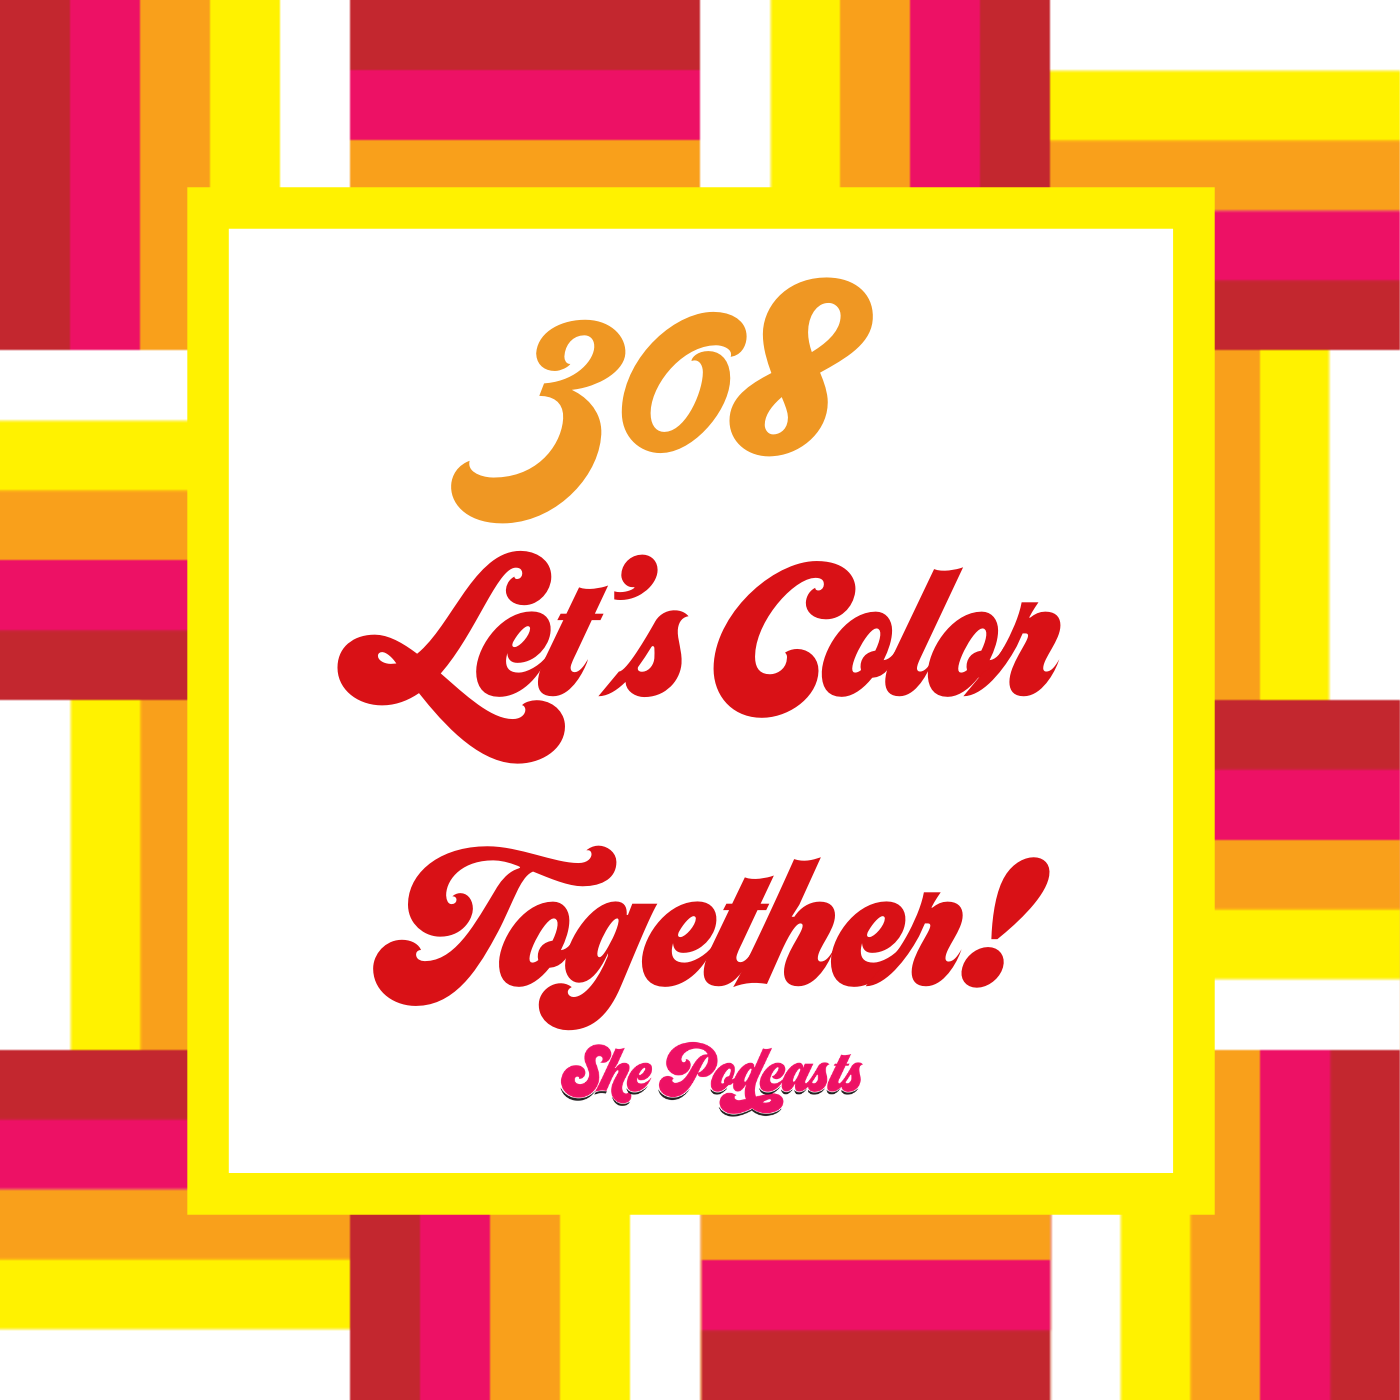 308 Lets Color Together